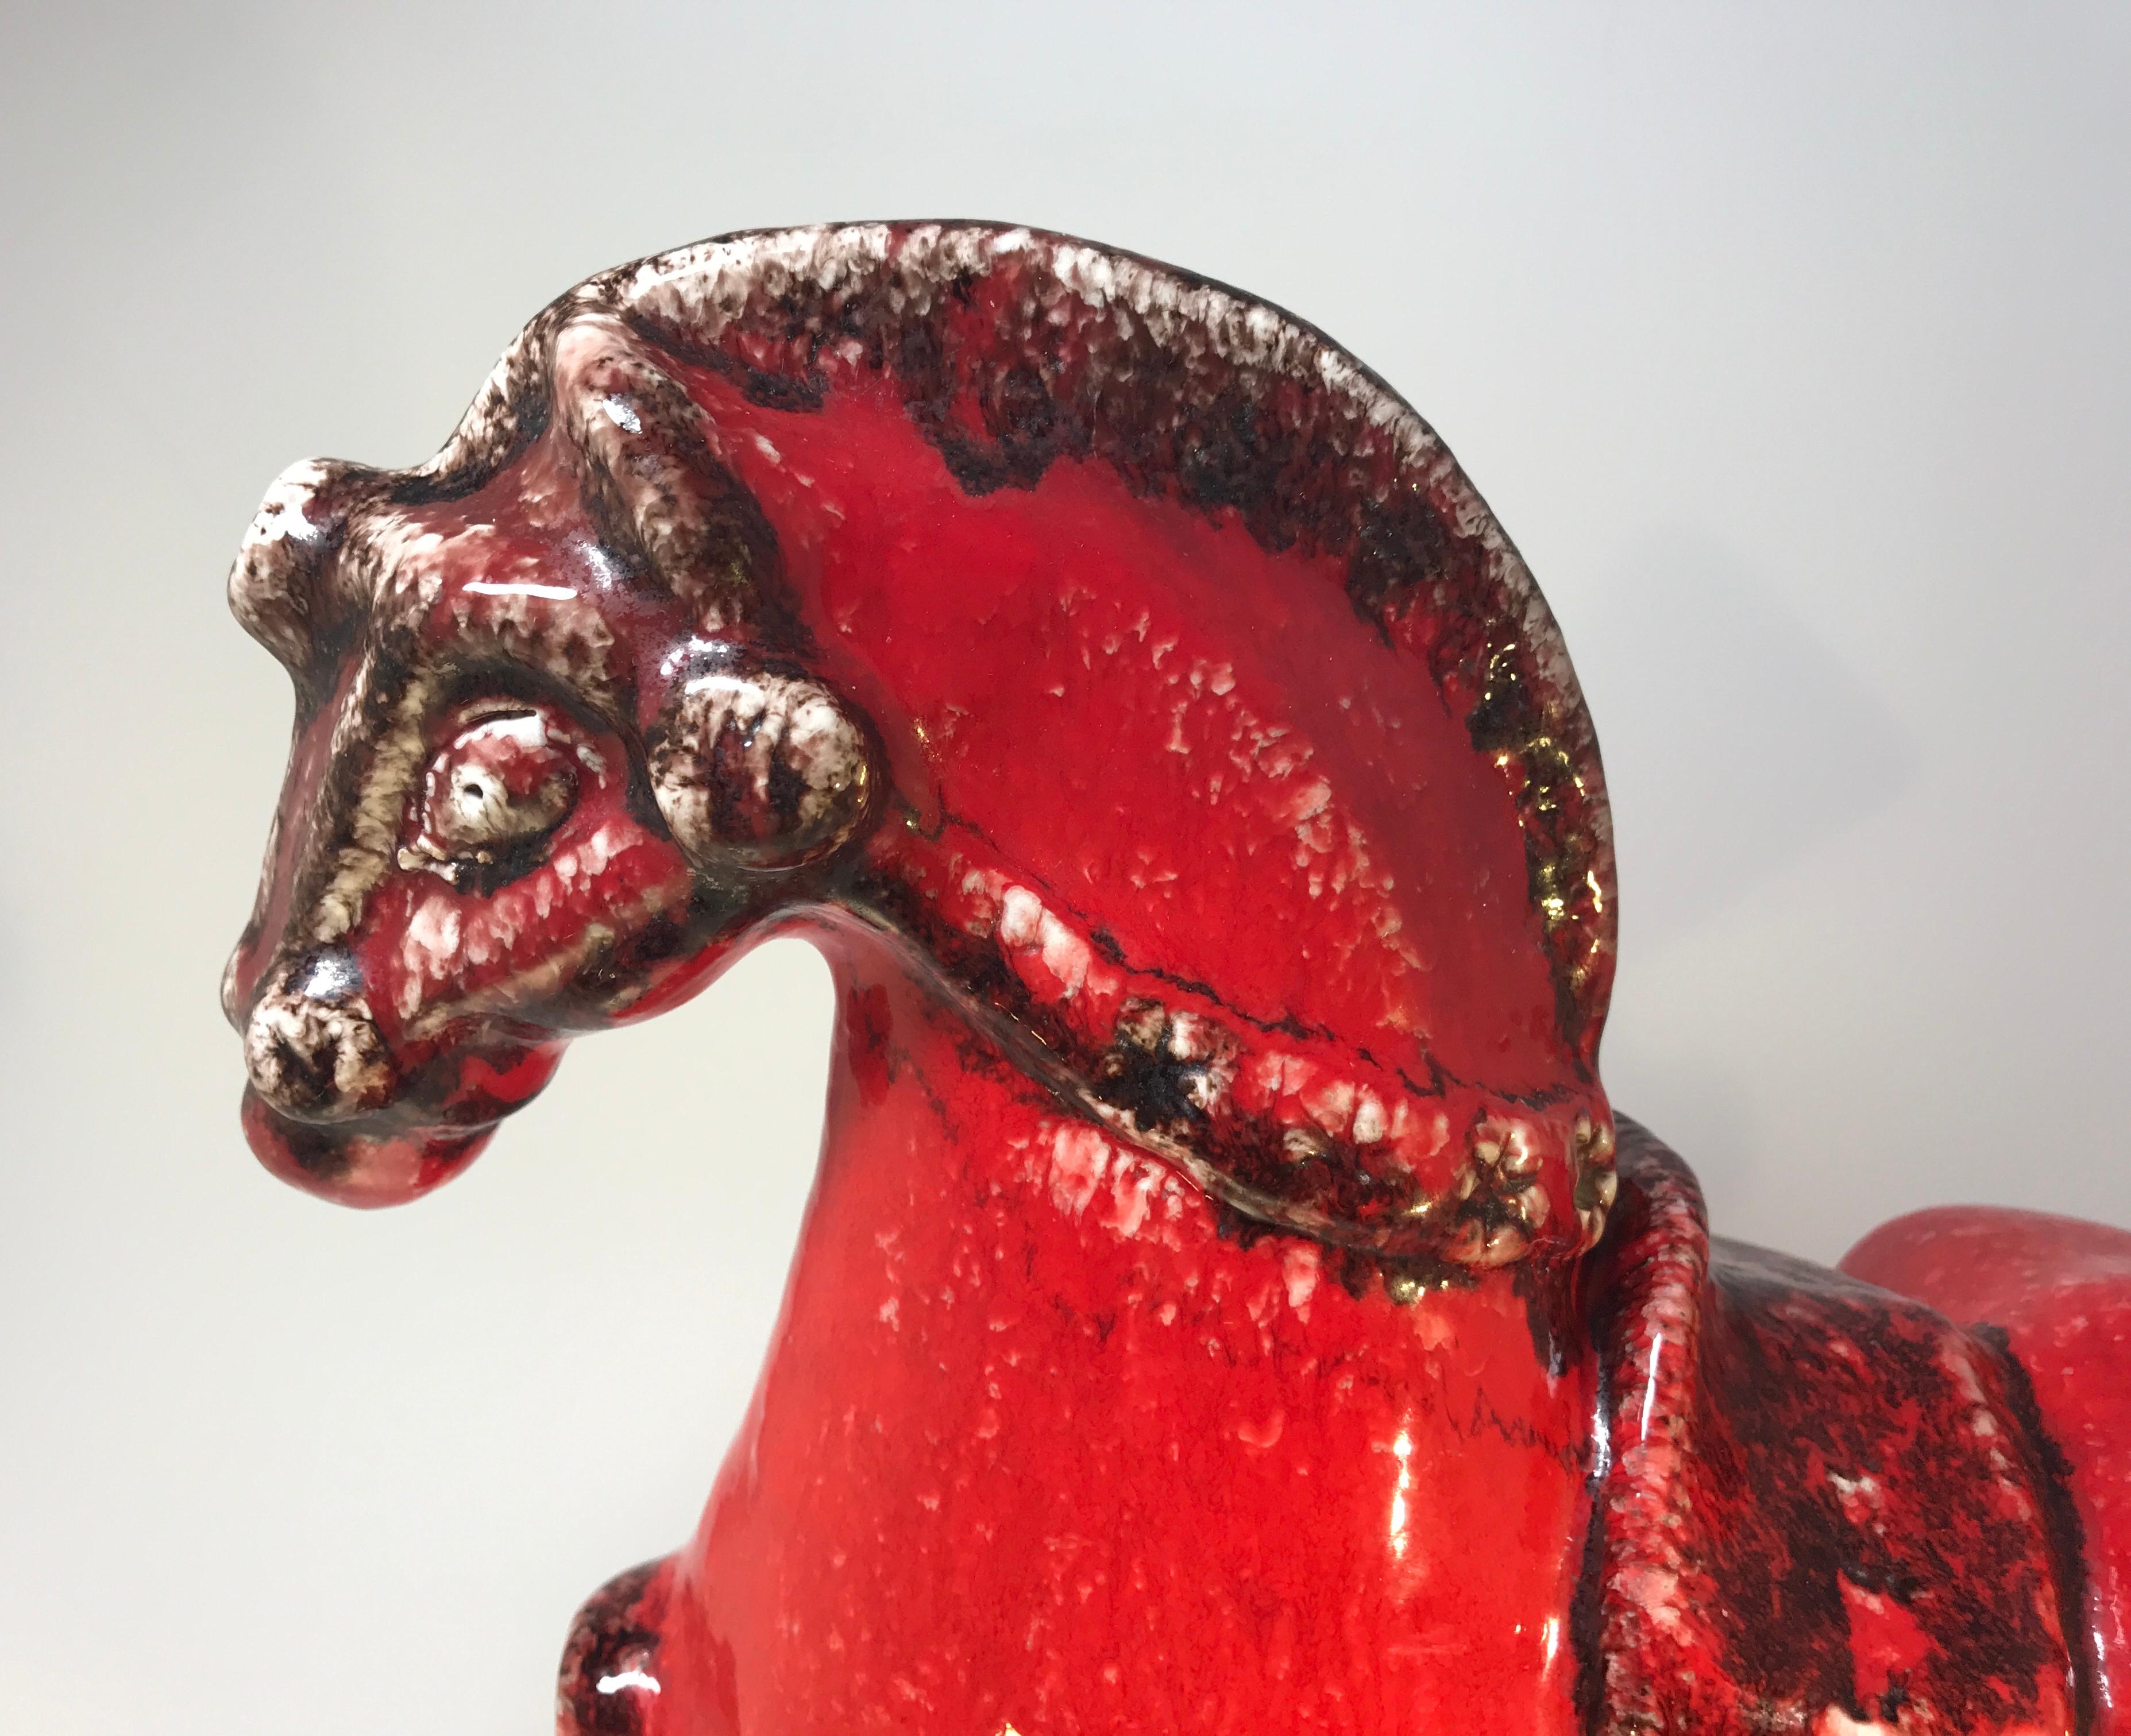 Imposant et accrocheur, grand cheval en céramique italienne rouge vif et noir de Nuovo Rinascemento,
vers les années 1960
Il s'agit vraiment d'une 